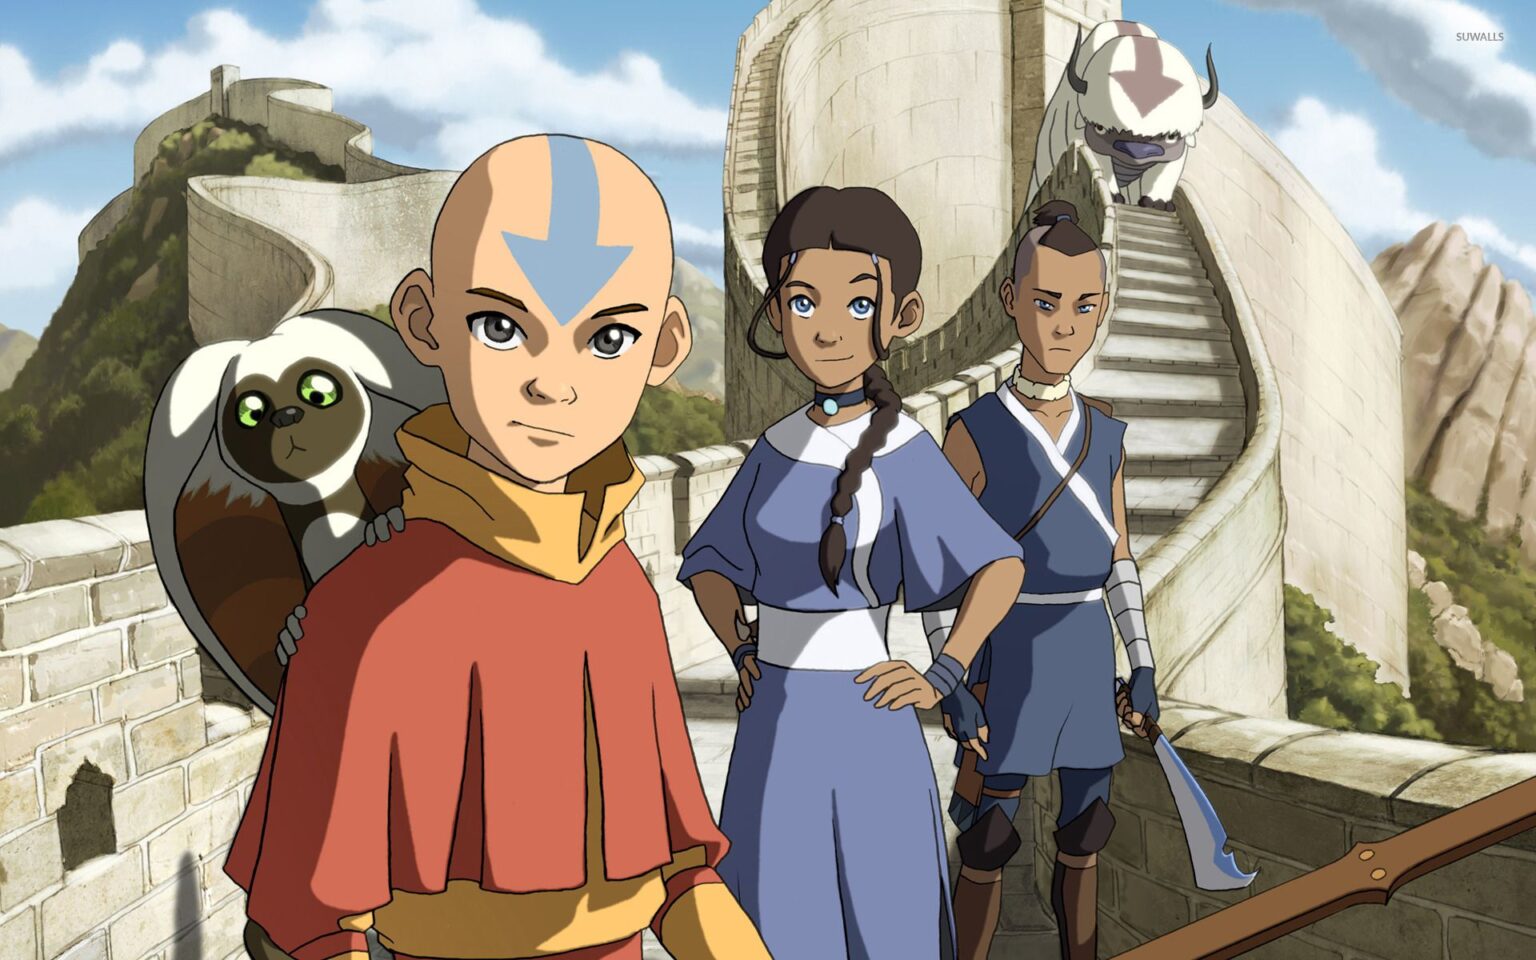 ¿Eres fan de 'Avatar: La Leyenda de Aang'? Descubre si recuerdas todos estos chistes de Toph.